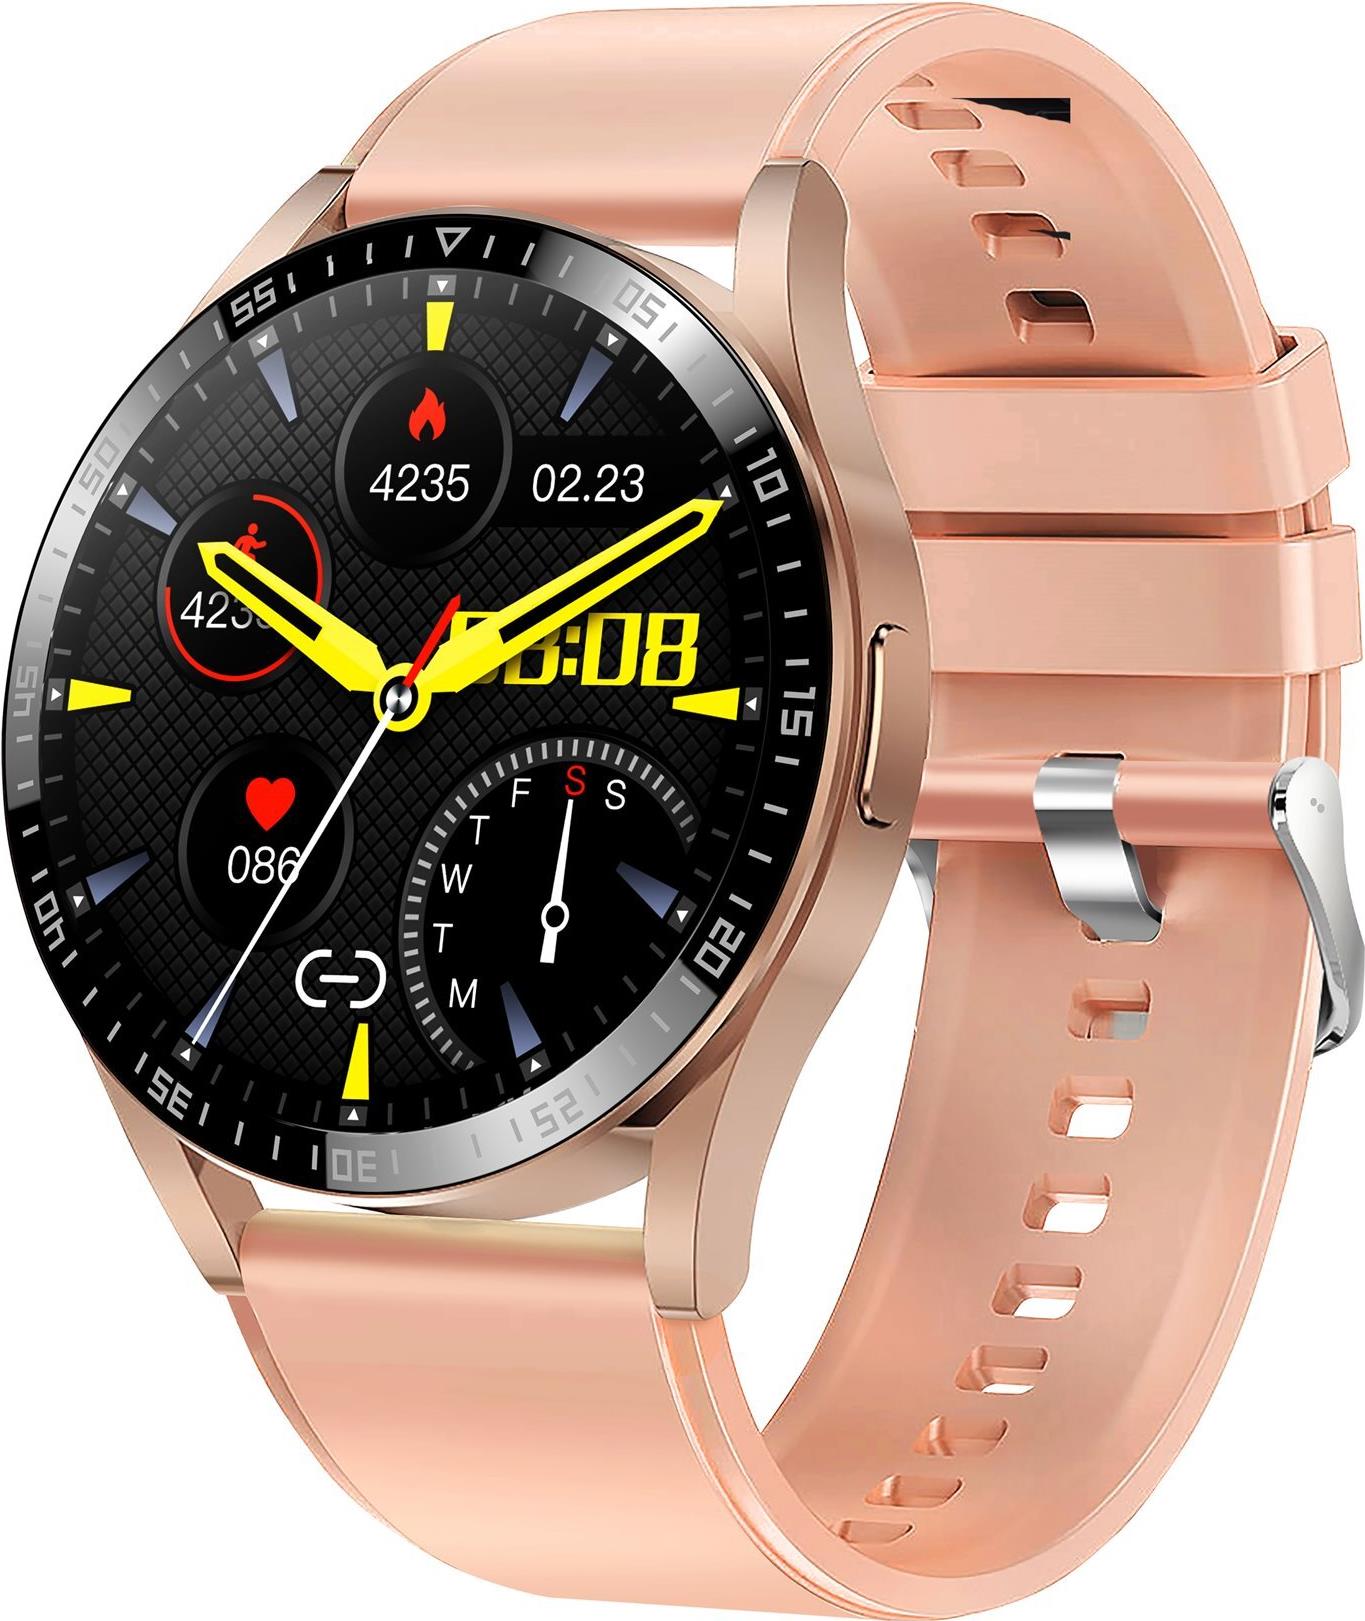 DENVER SWC-372RO – Intelligente Uhr mit Band – Anzeige 3.3 cm (1.3) – Bluetooth (116111000570)